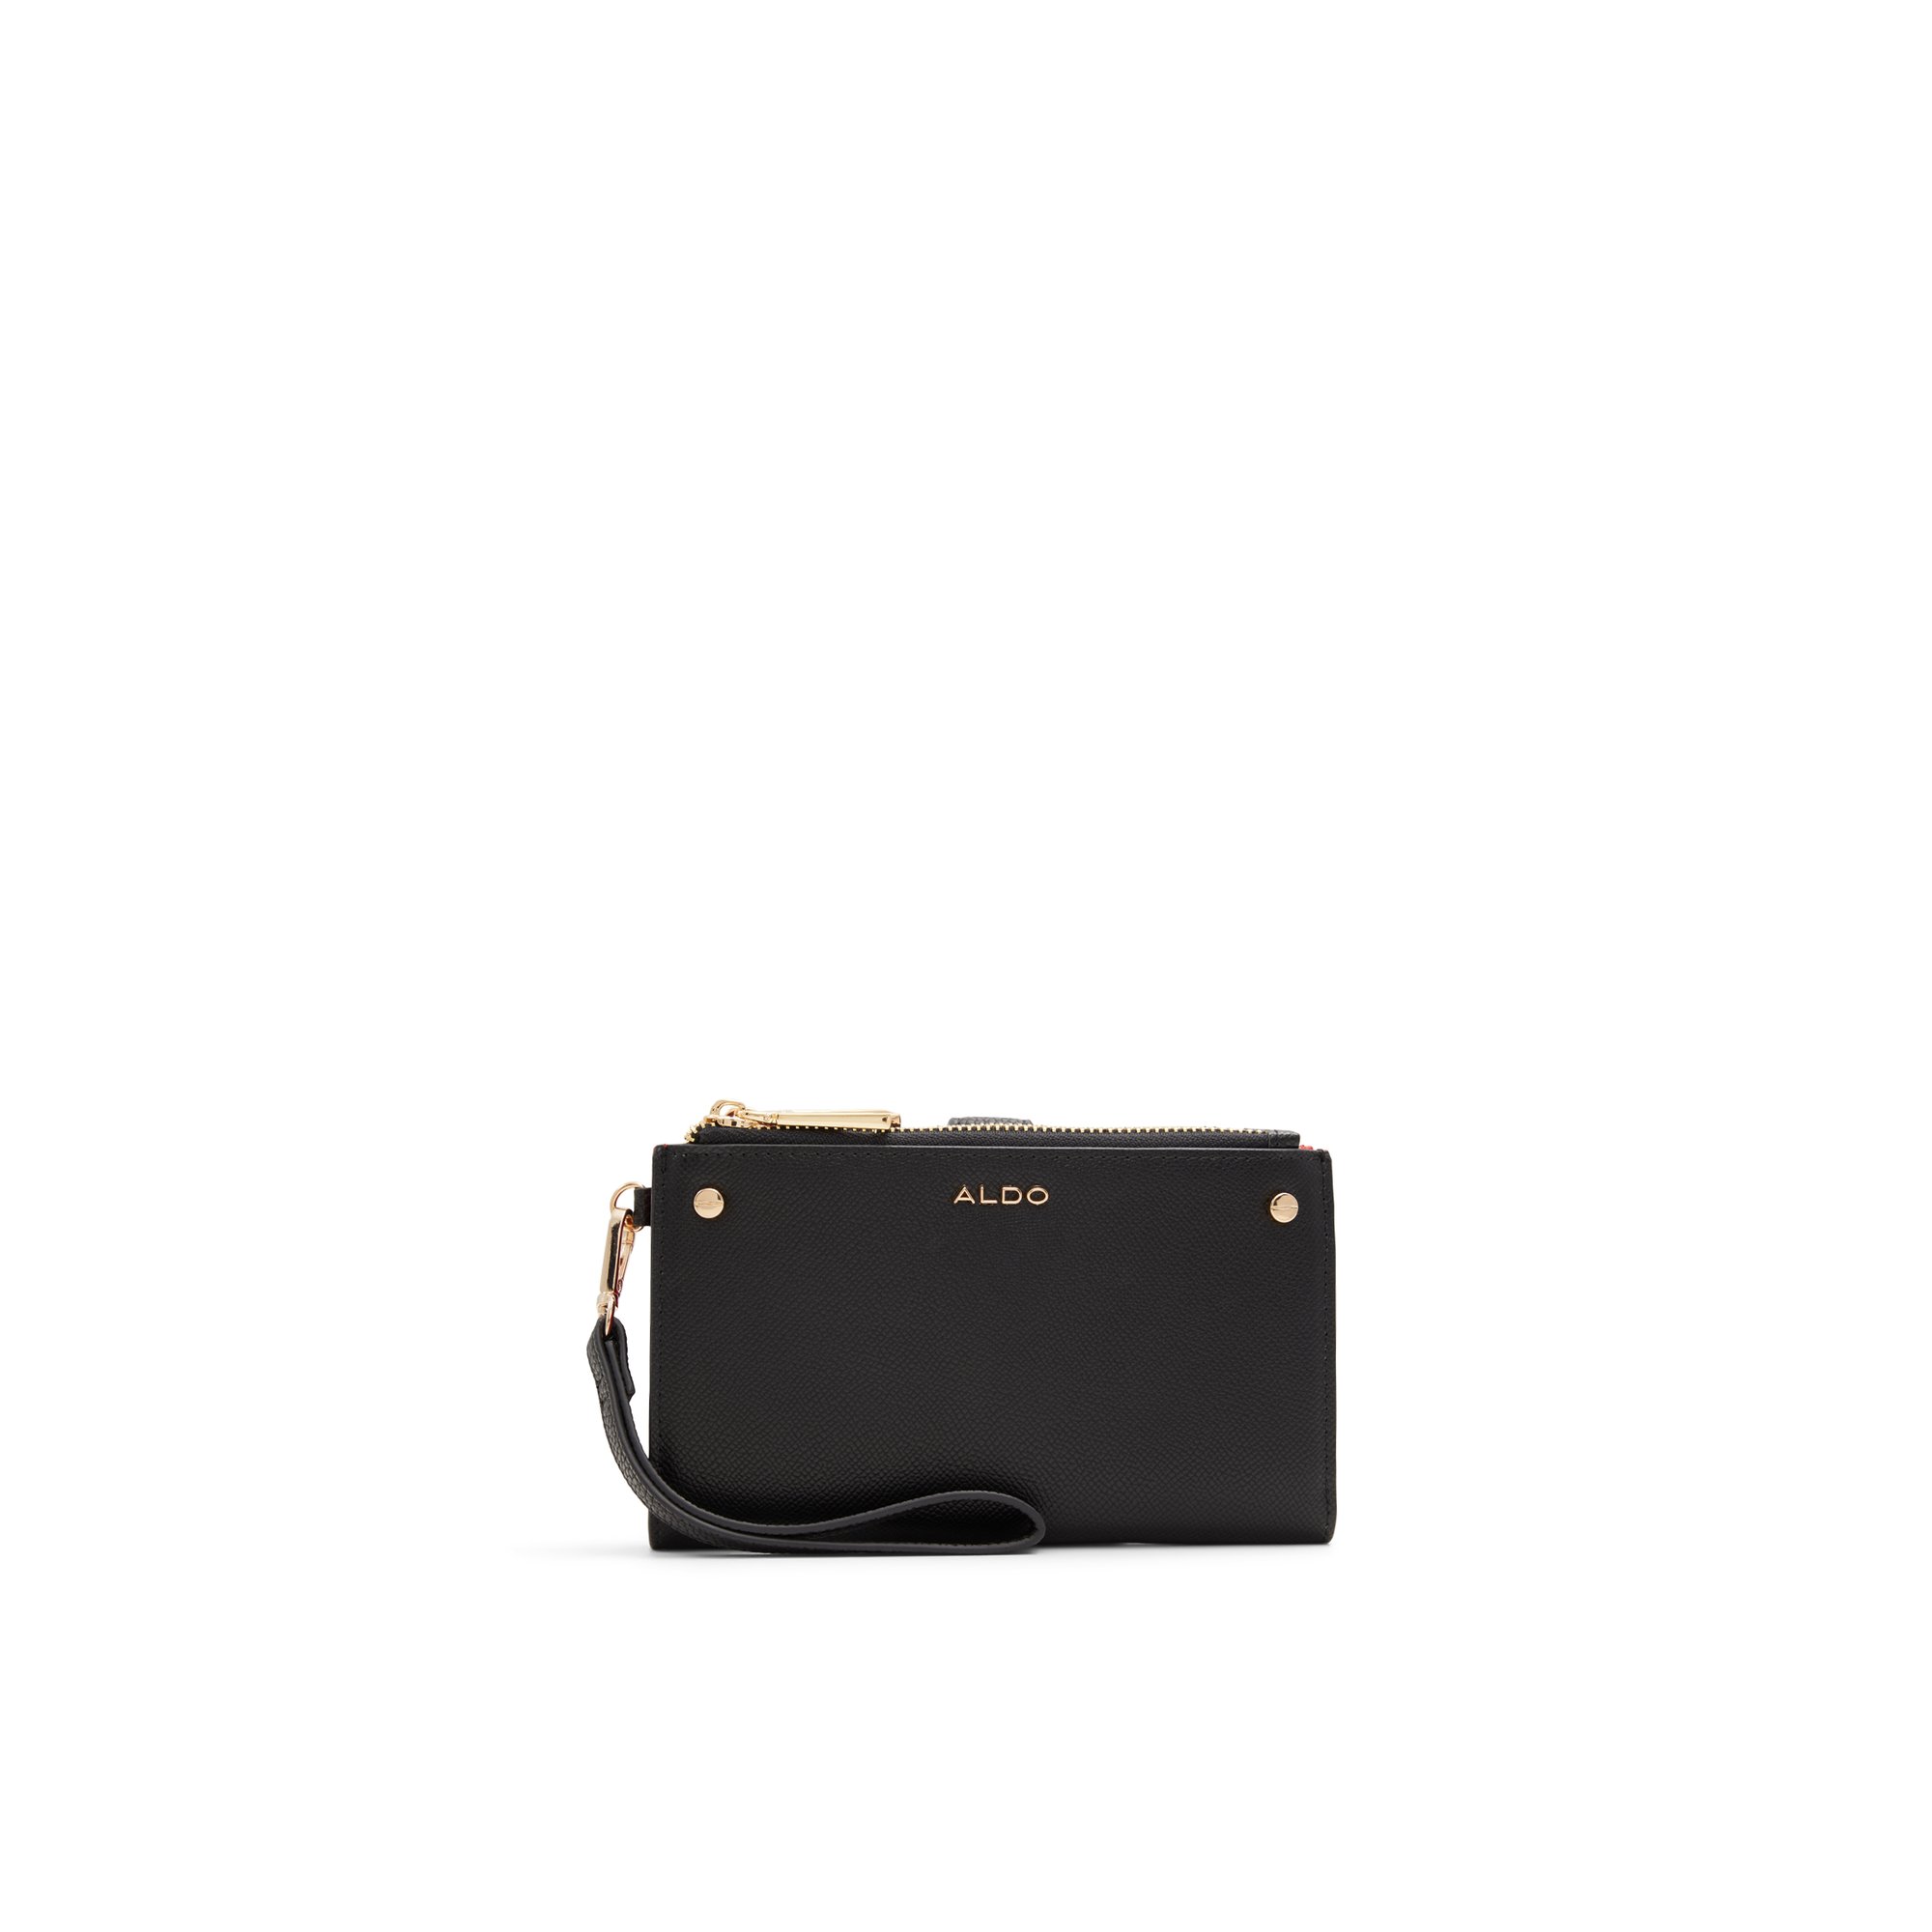 ALDO Illori - Women's Handbags Wallets - Black